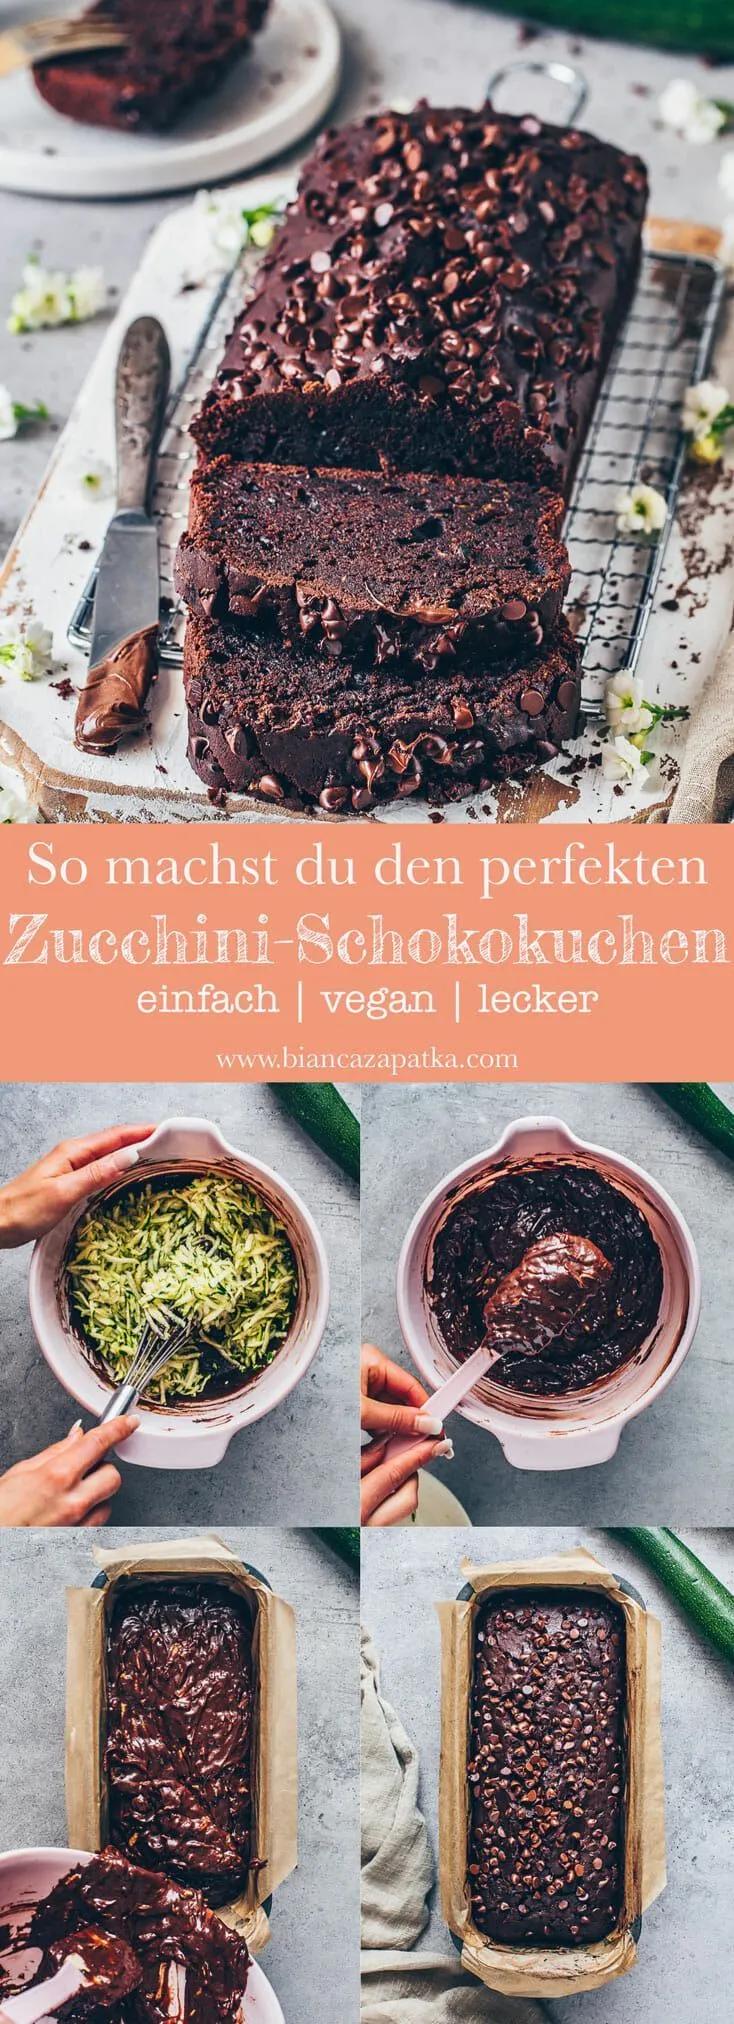 Schokoladenkuchen der veganen Zucchini - Meine Rezepte - Bianca Zapatka ...